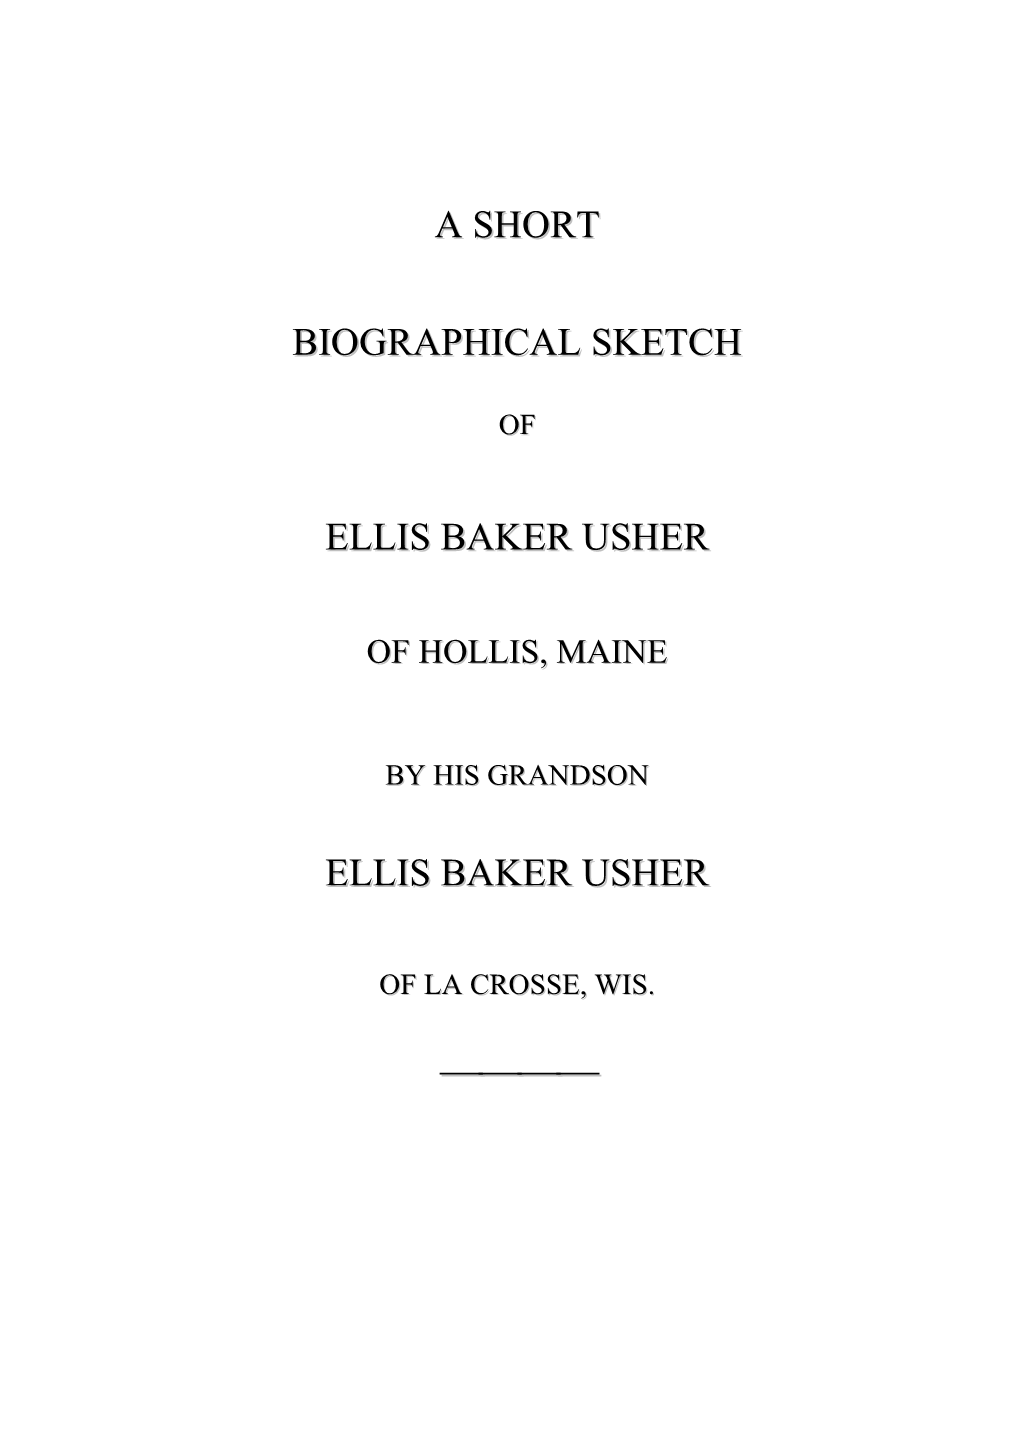 A Short Biographical Sketch of Ellis Baker Usher